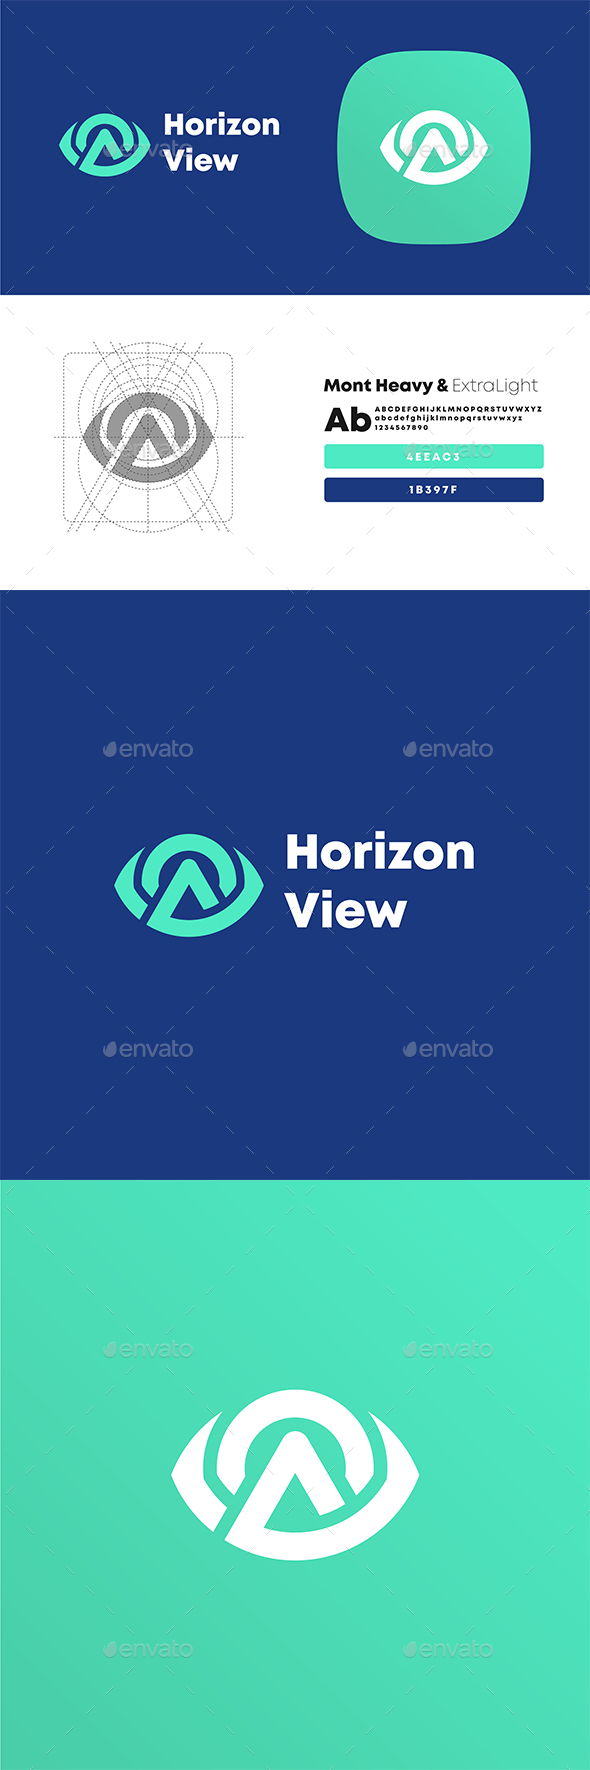 Horizon View Eye with Mountain Logo Design